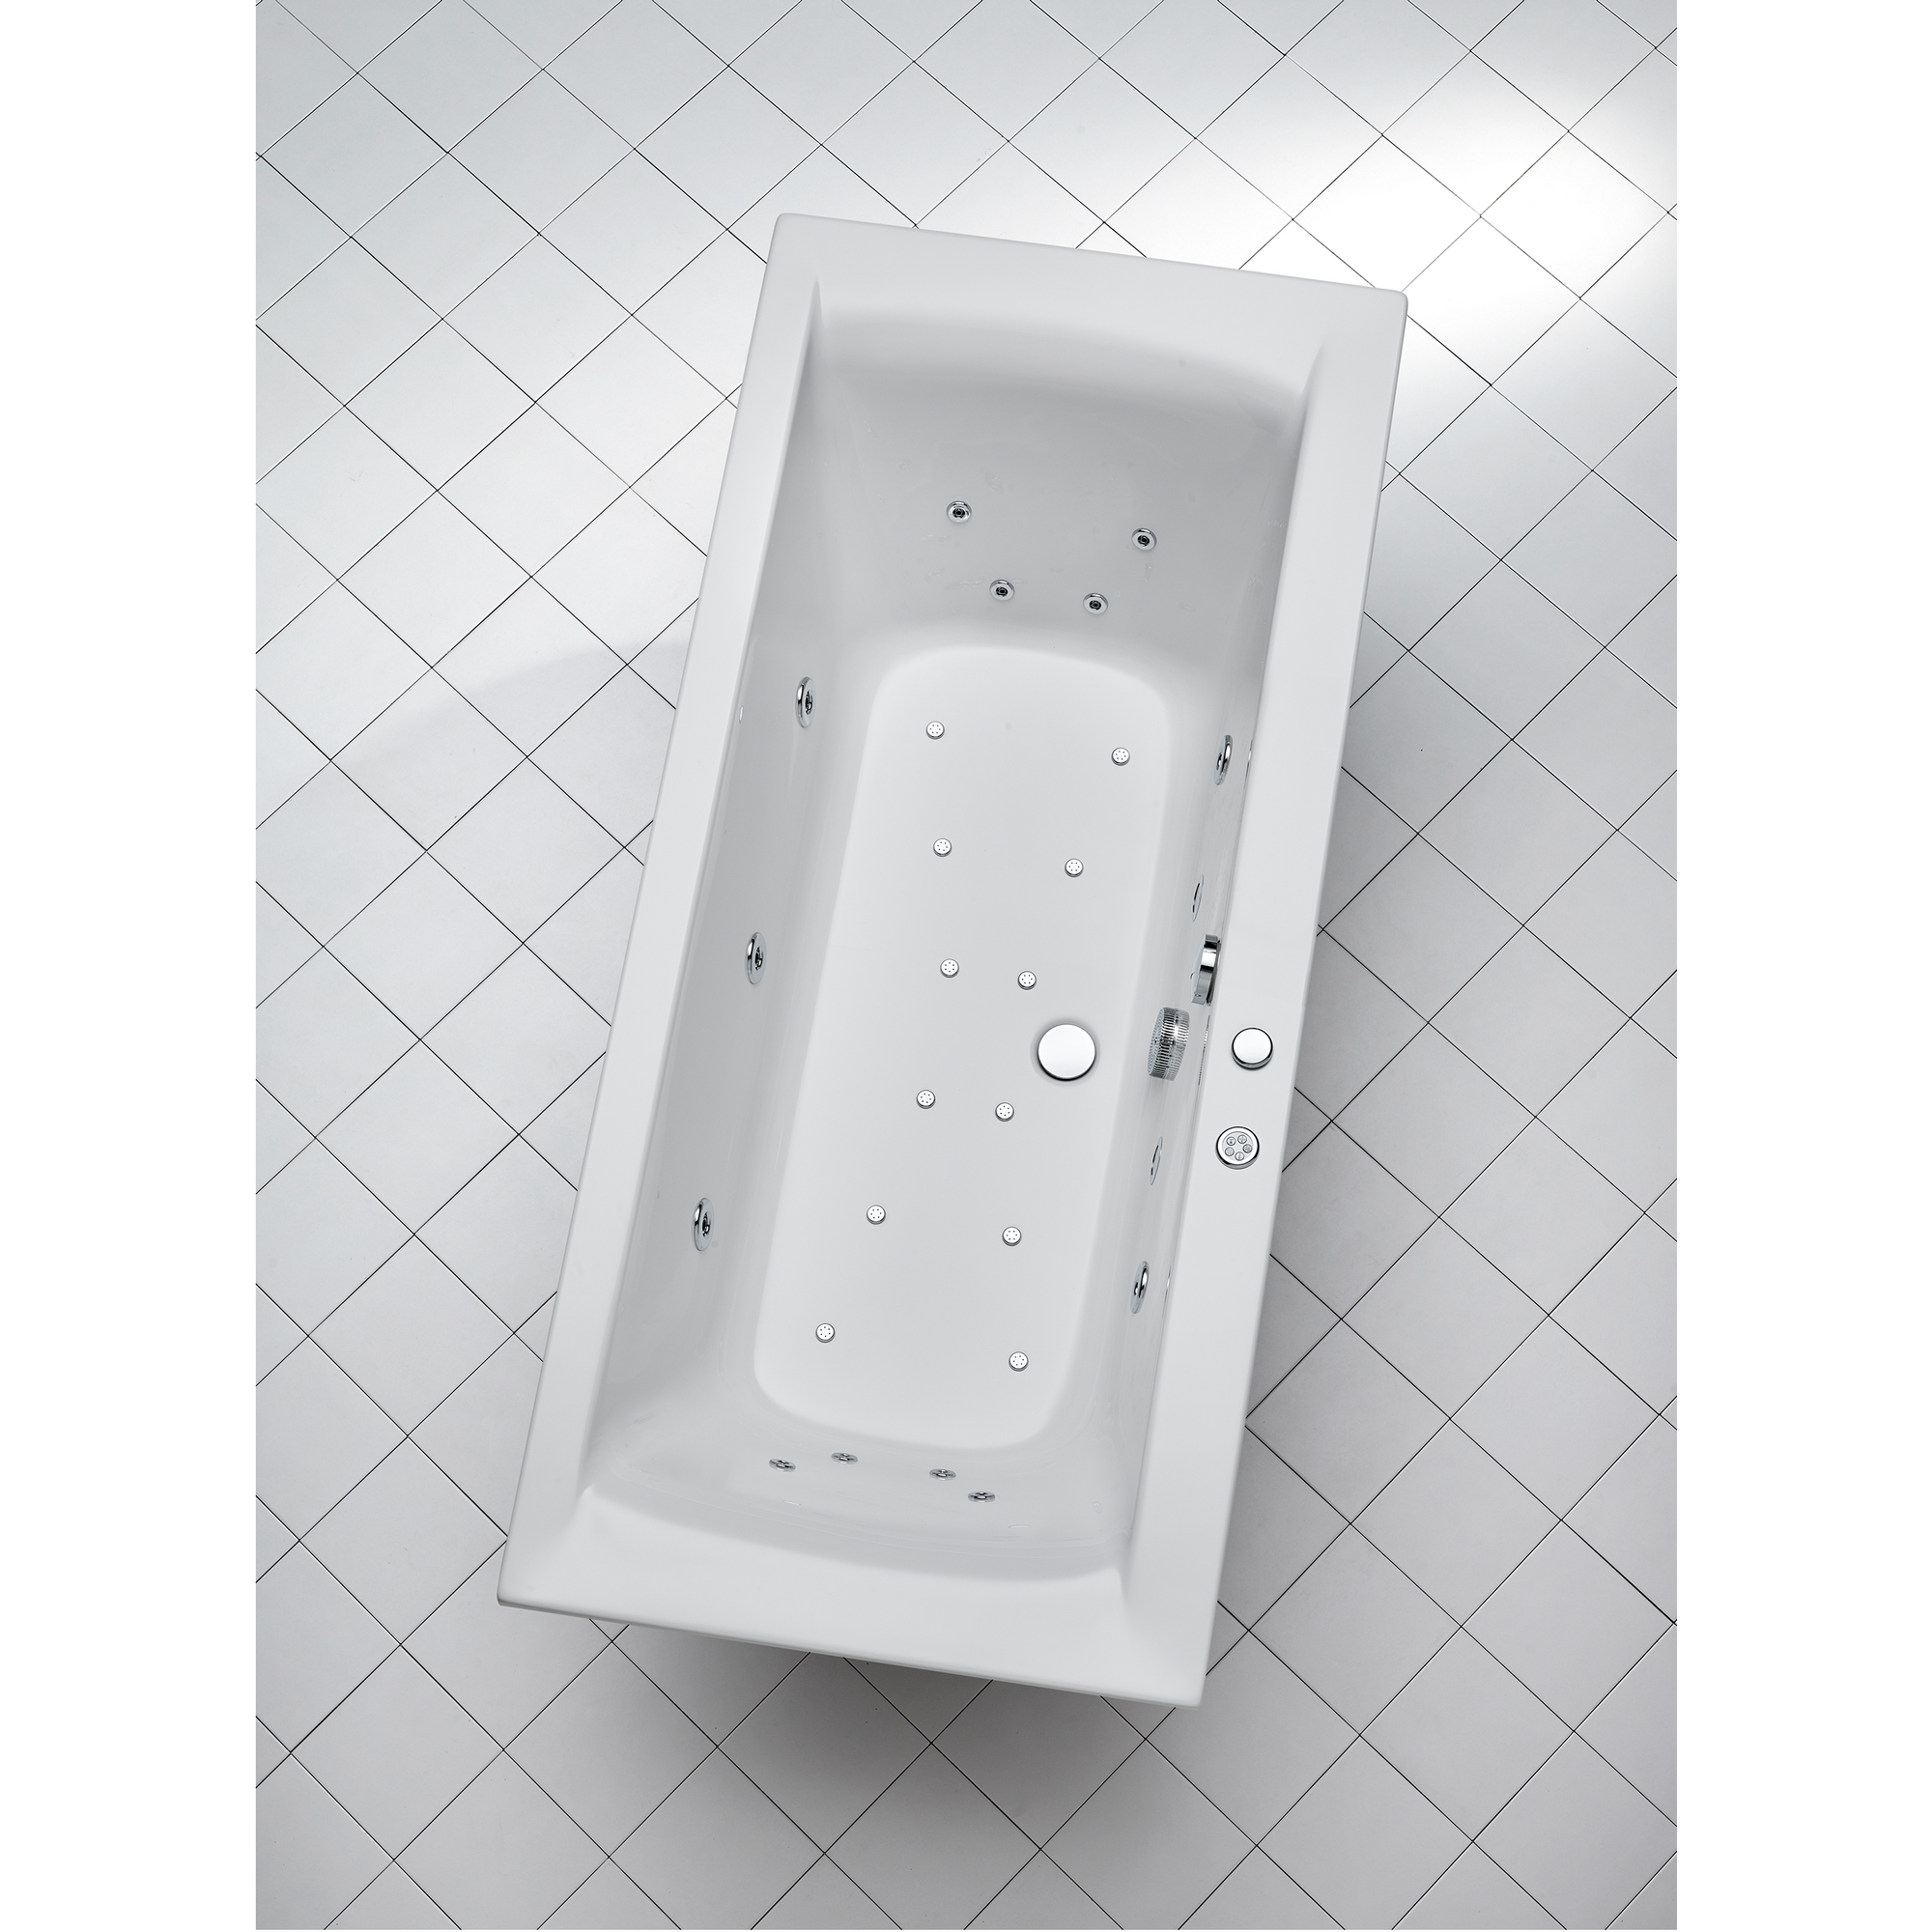 Whirlpool-Komplettset 'Rosa' Sanitäracryl weiß 200 x 90 x 45 cm + product picture